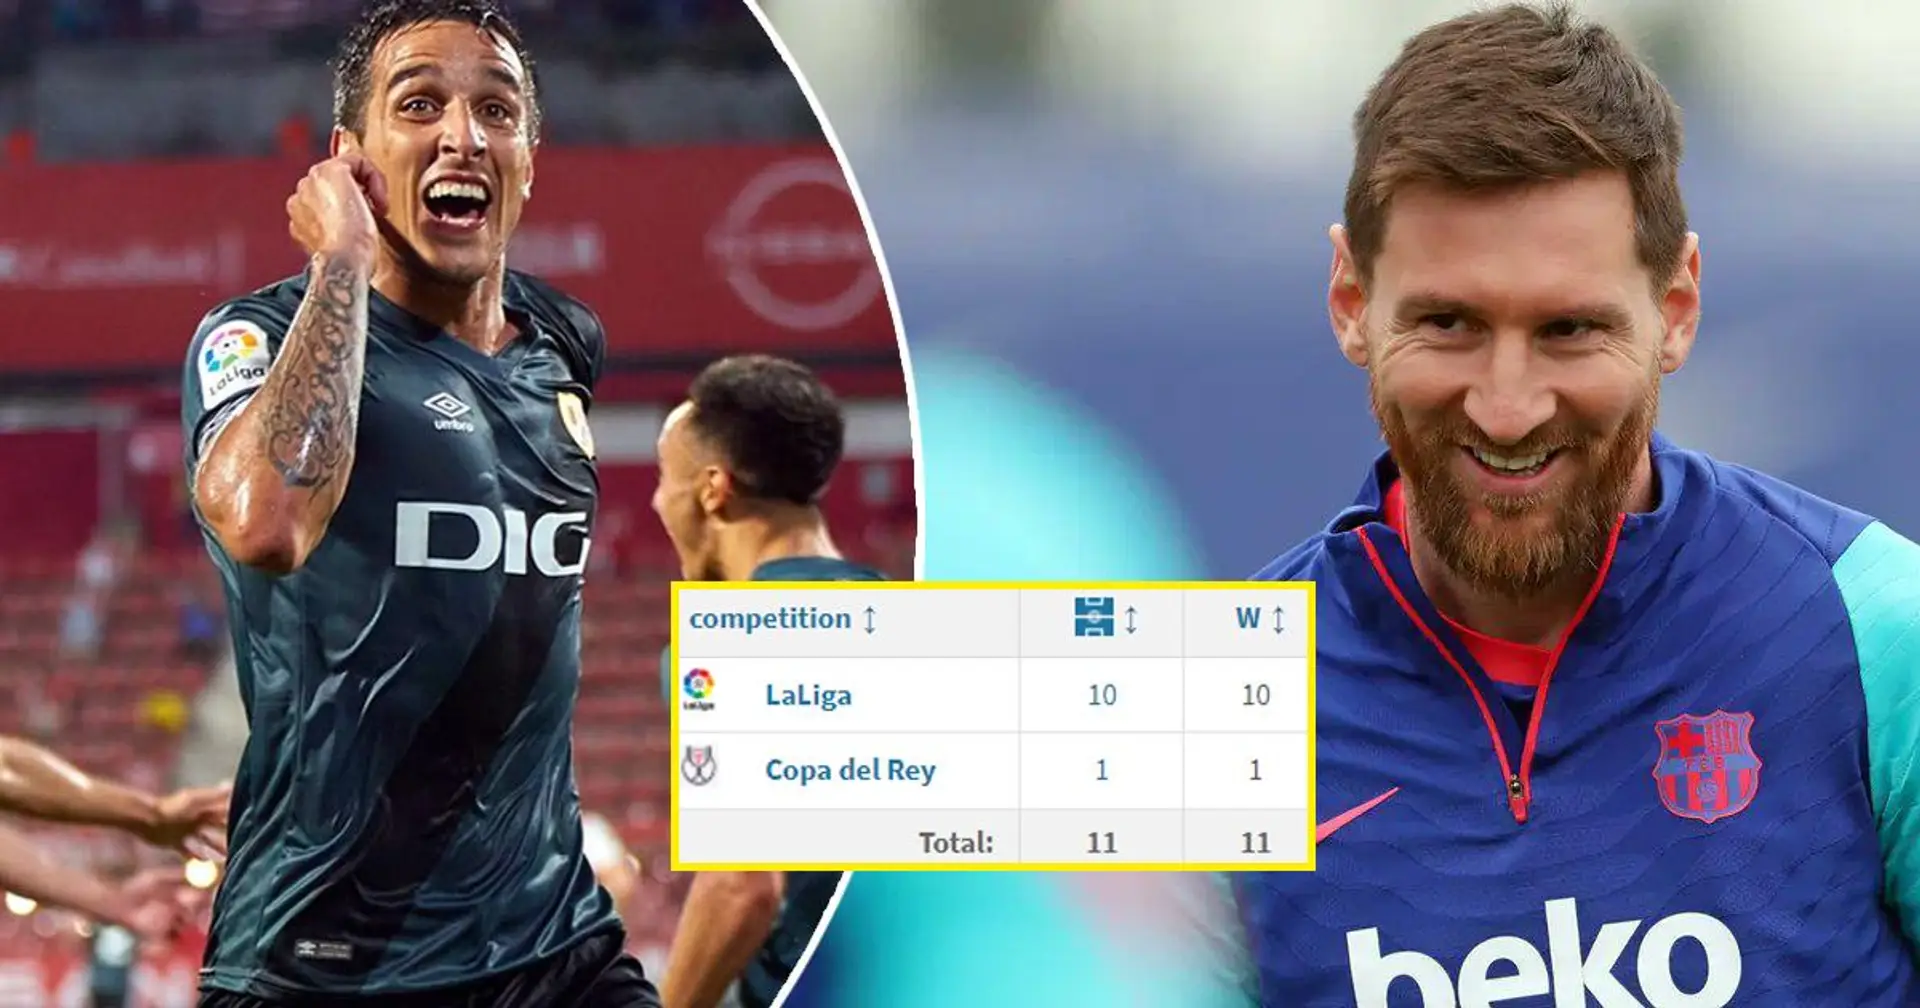 El Rayo Vallecano consigue el ascenso - Lionel Messi seguro que celebra esta noticia: explicación